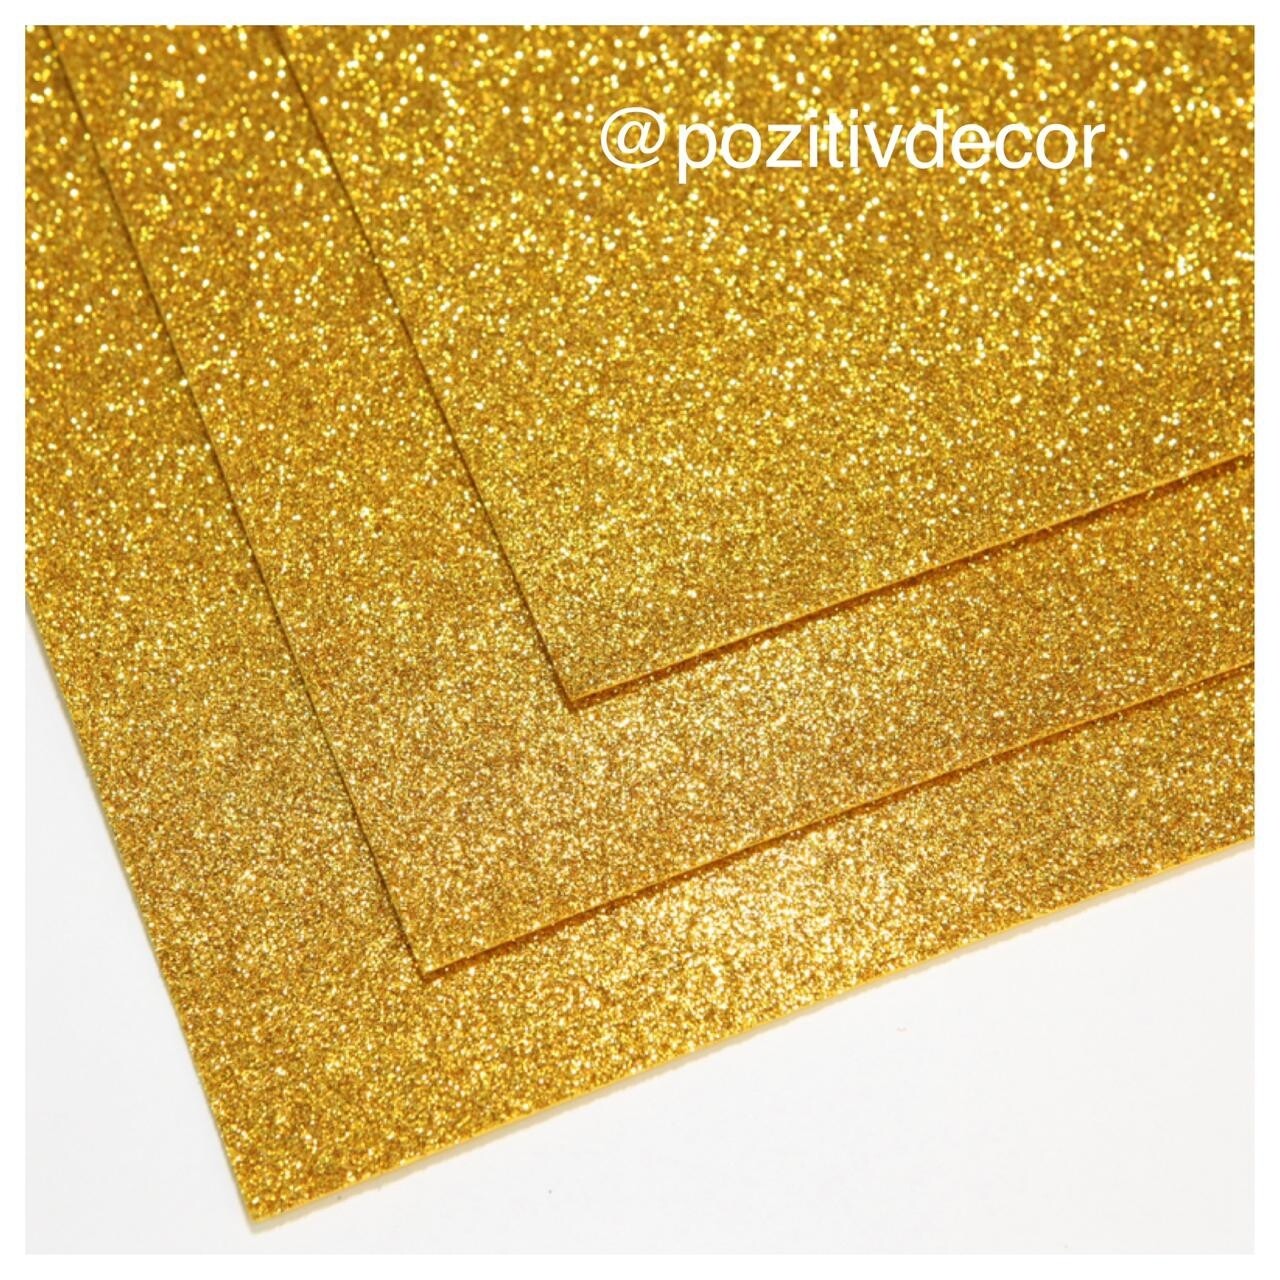 Фоамиран глиттерный - толщина 1,5 мм , размер листа 60/70 см.
Цвет - желтое золото